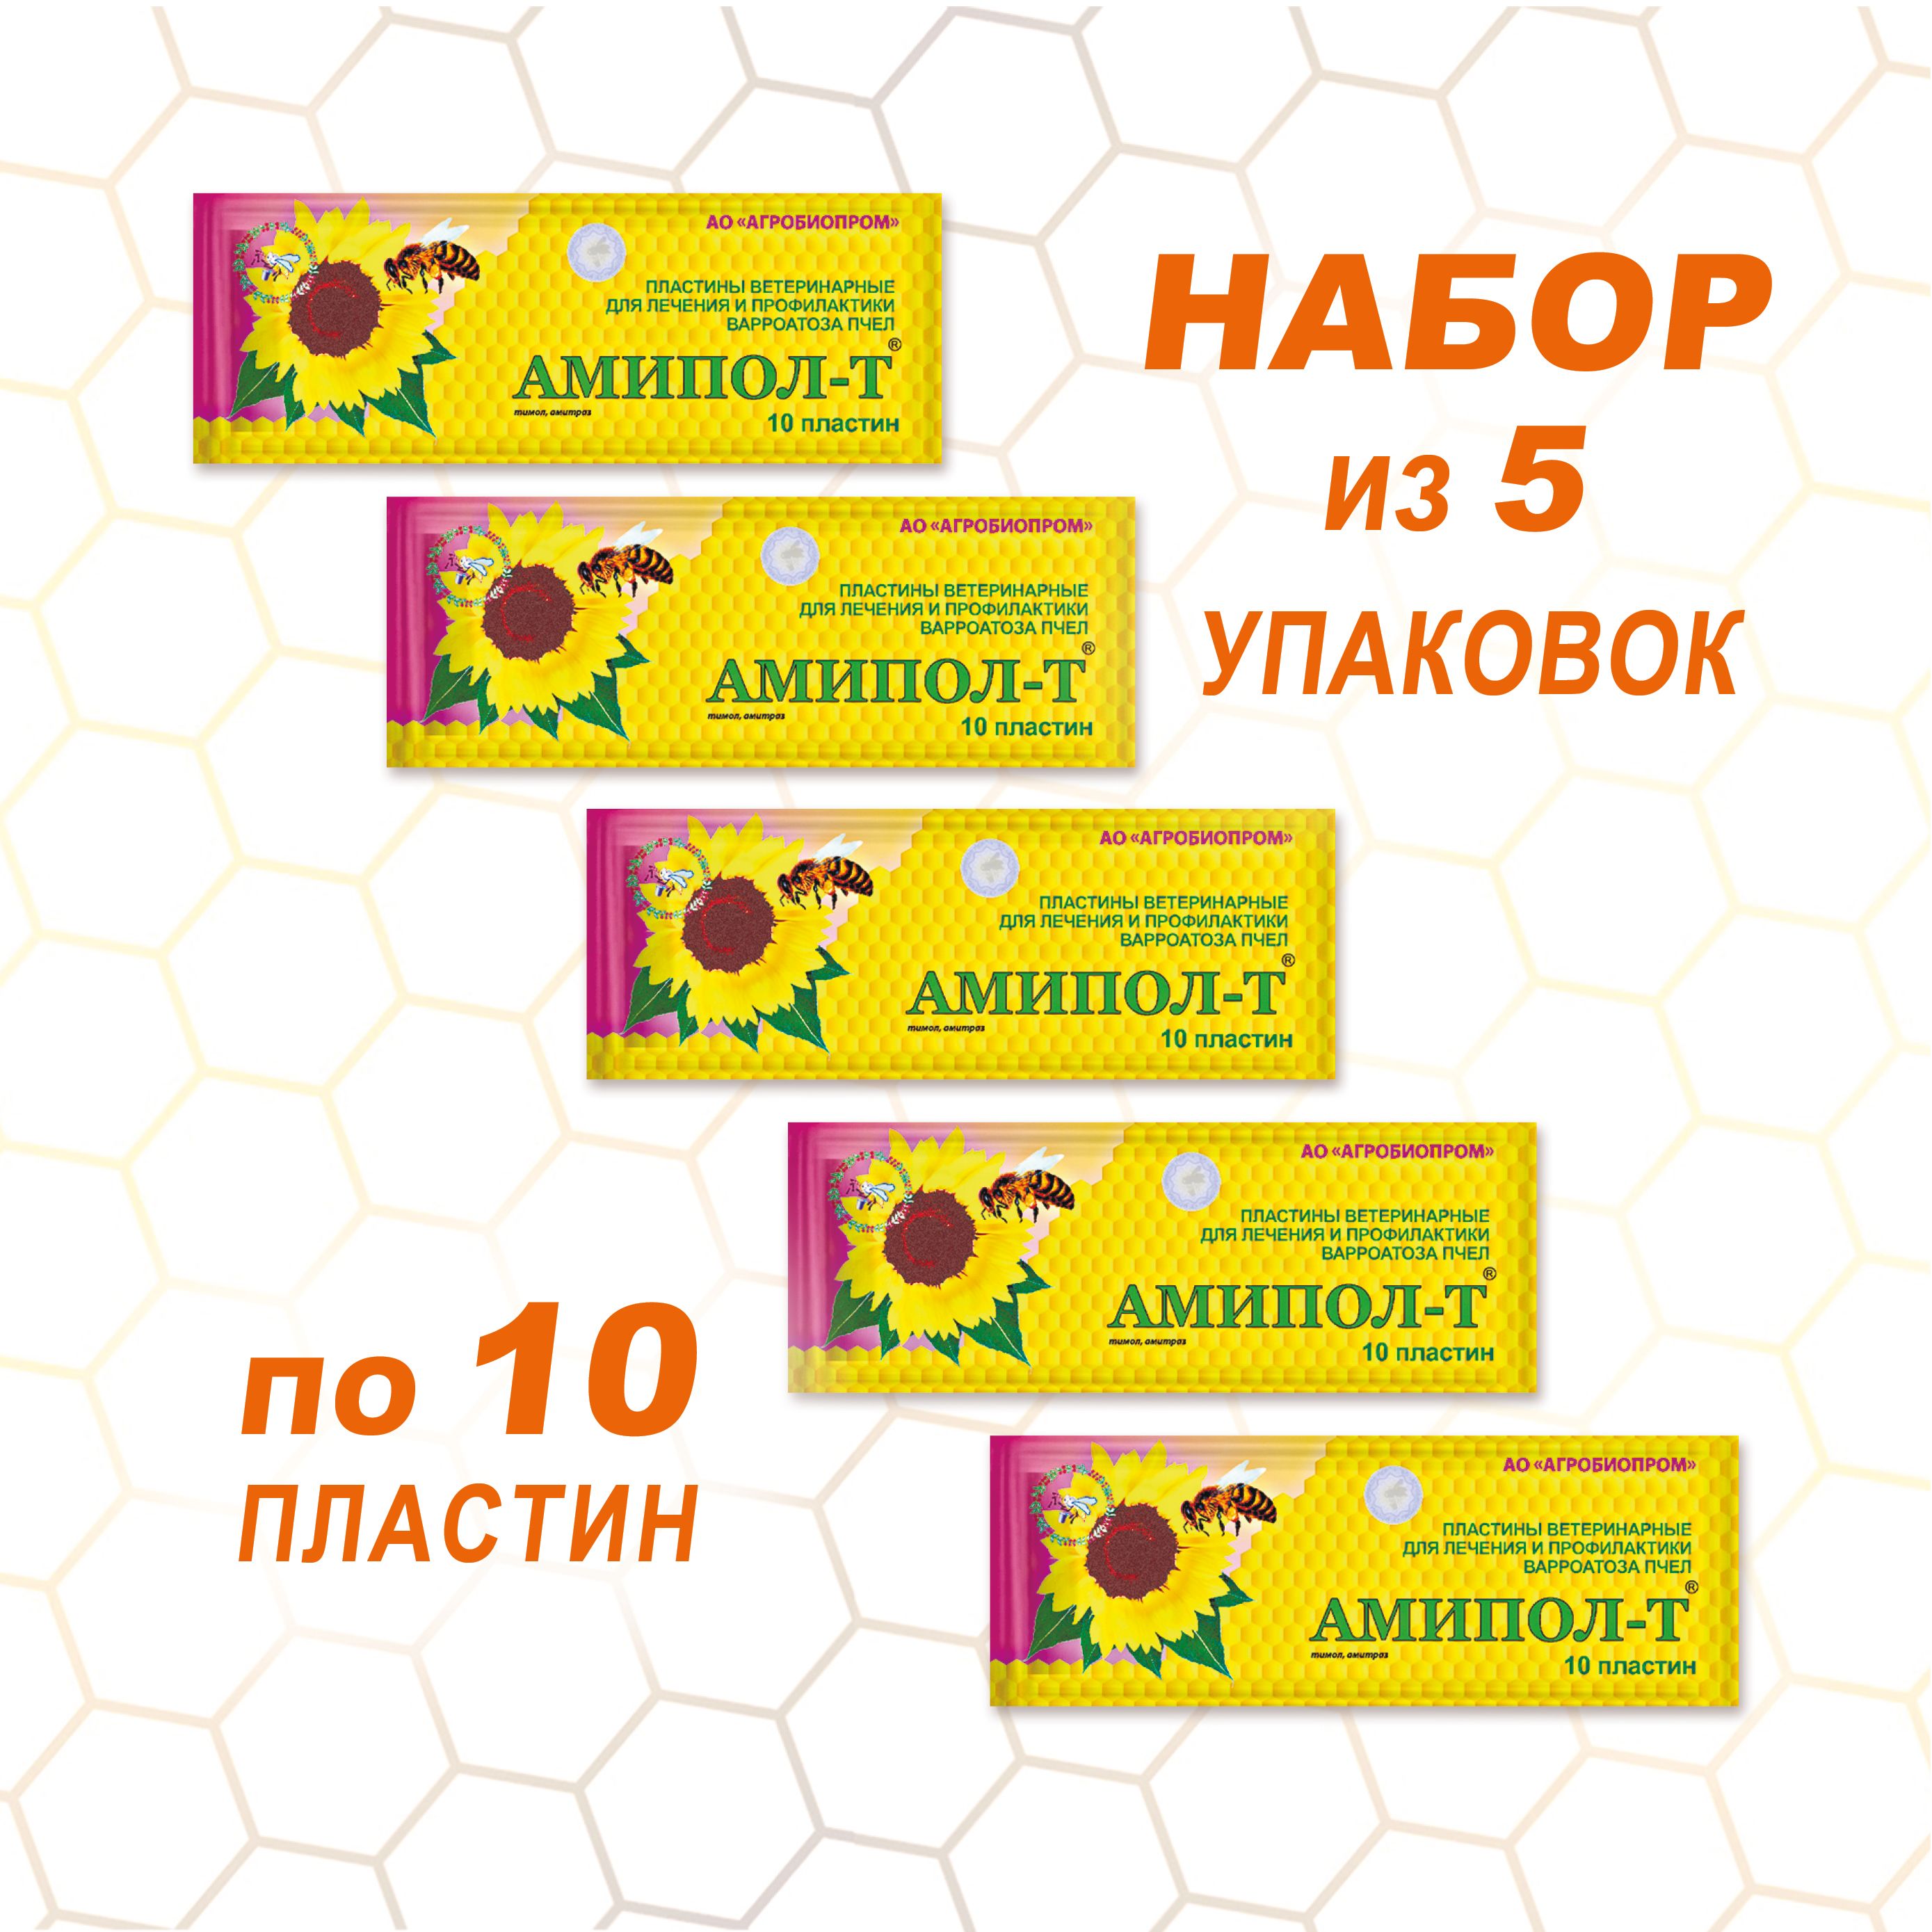 Пластины для пчел. Амипол. Ветеринария пчёлы препарат Амипол – т. Агробиопром. Агробиопром постеры.